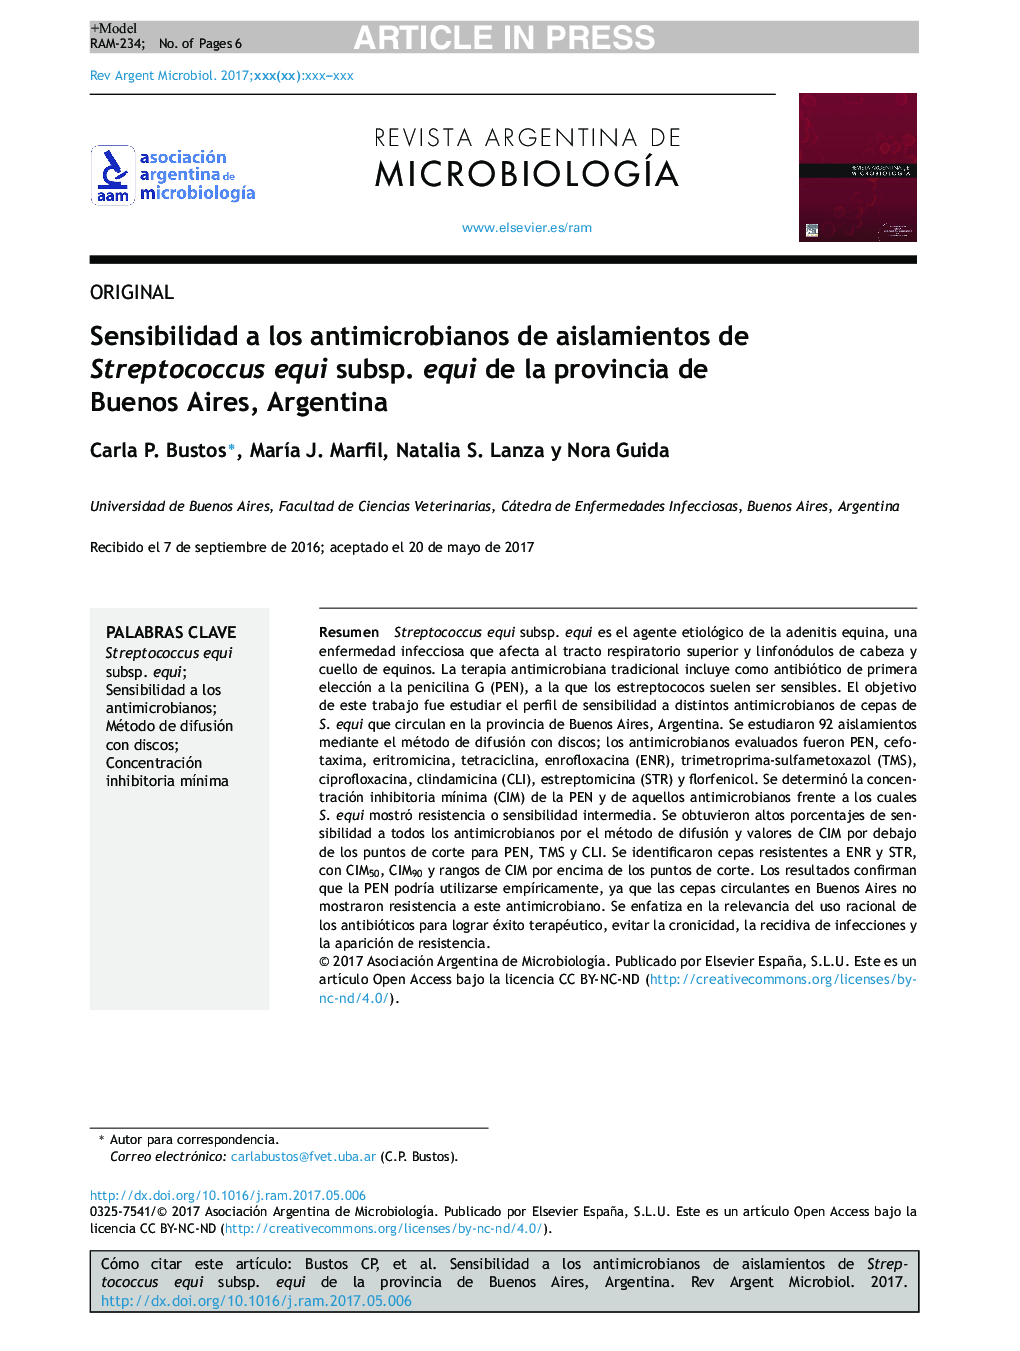 Sensibilidad a los antimicrobianos de aislamientos de Streptococcus equi subsp. equi de la provincia de Buenos Aires, Argentina